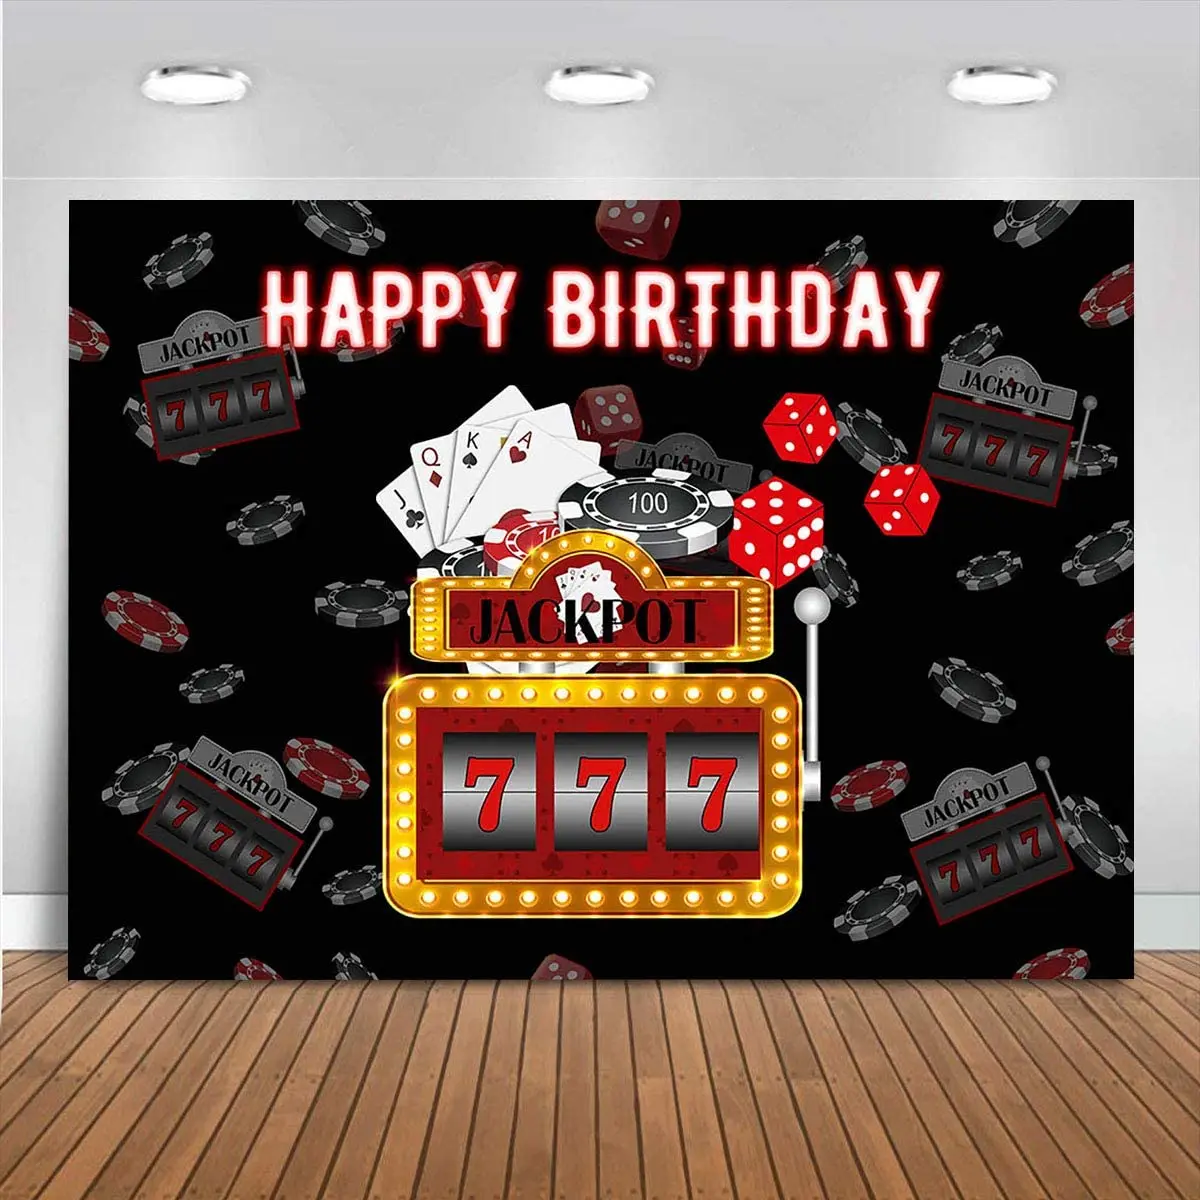 

Задний фон для Лас Вегаса, игровой автомат для покерных игральных костей, игровой автомат 777, Winner украшение для торта на день рождения на тем...